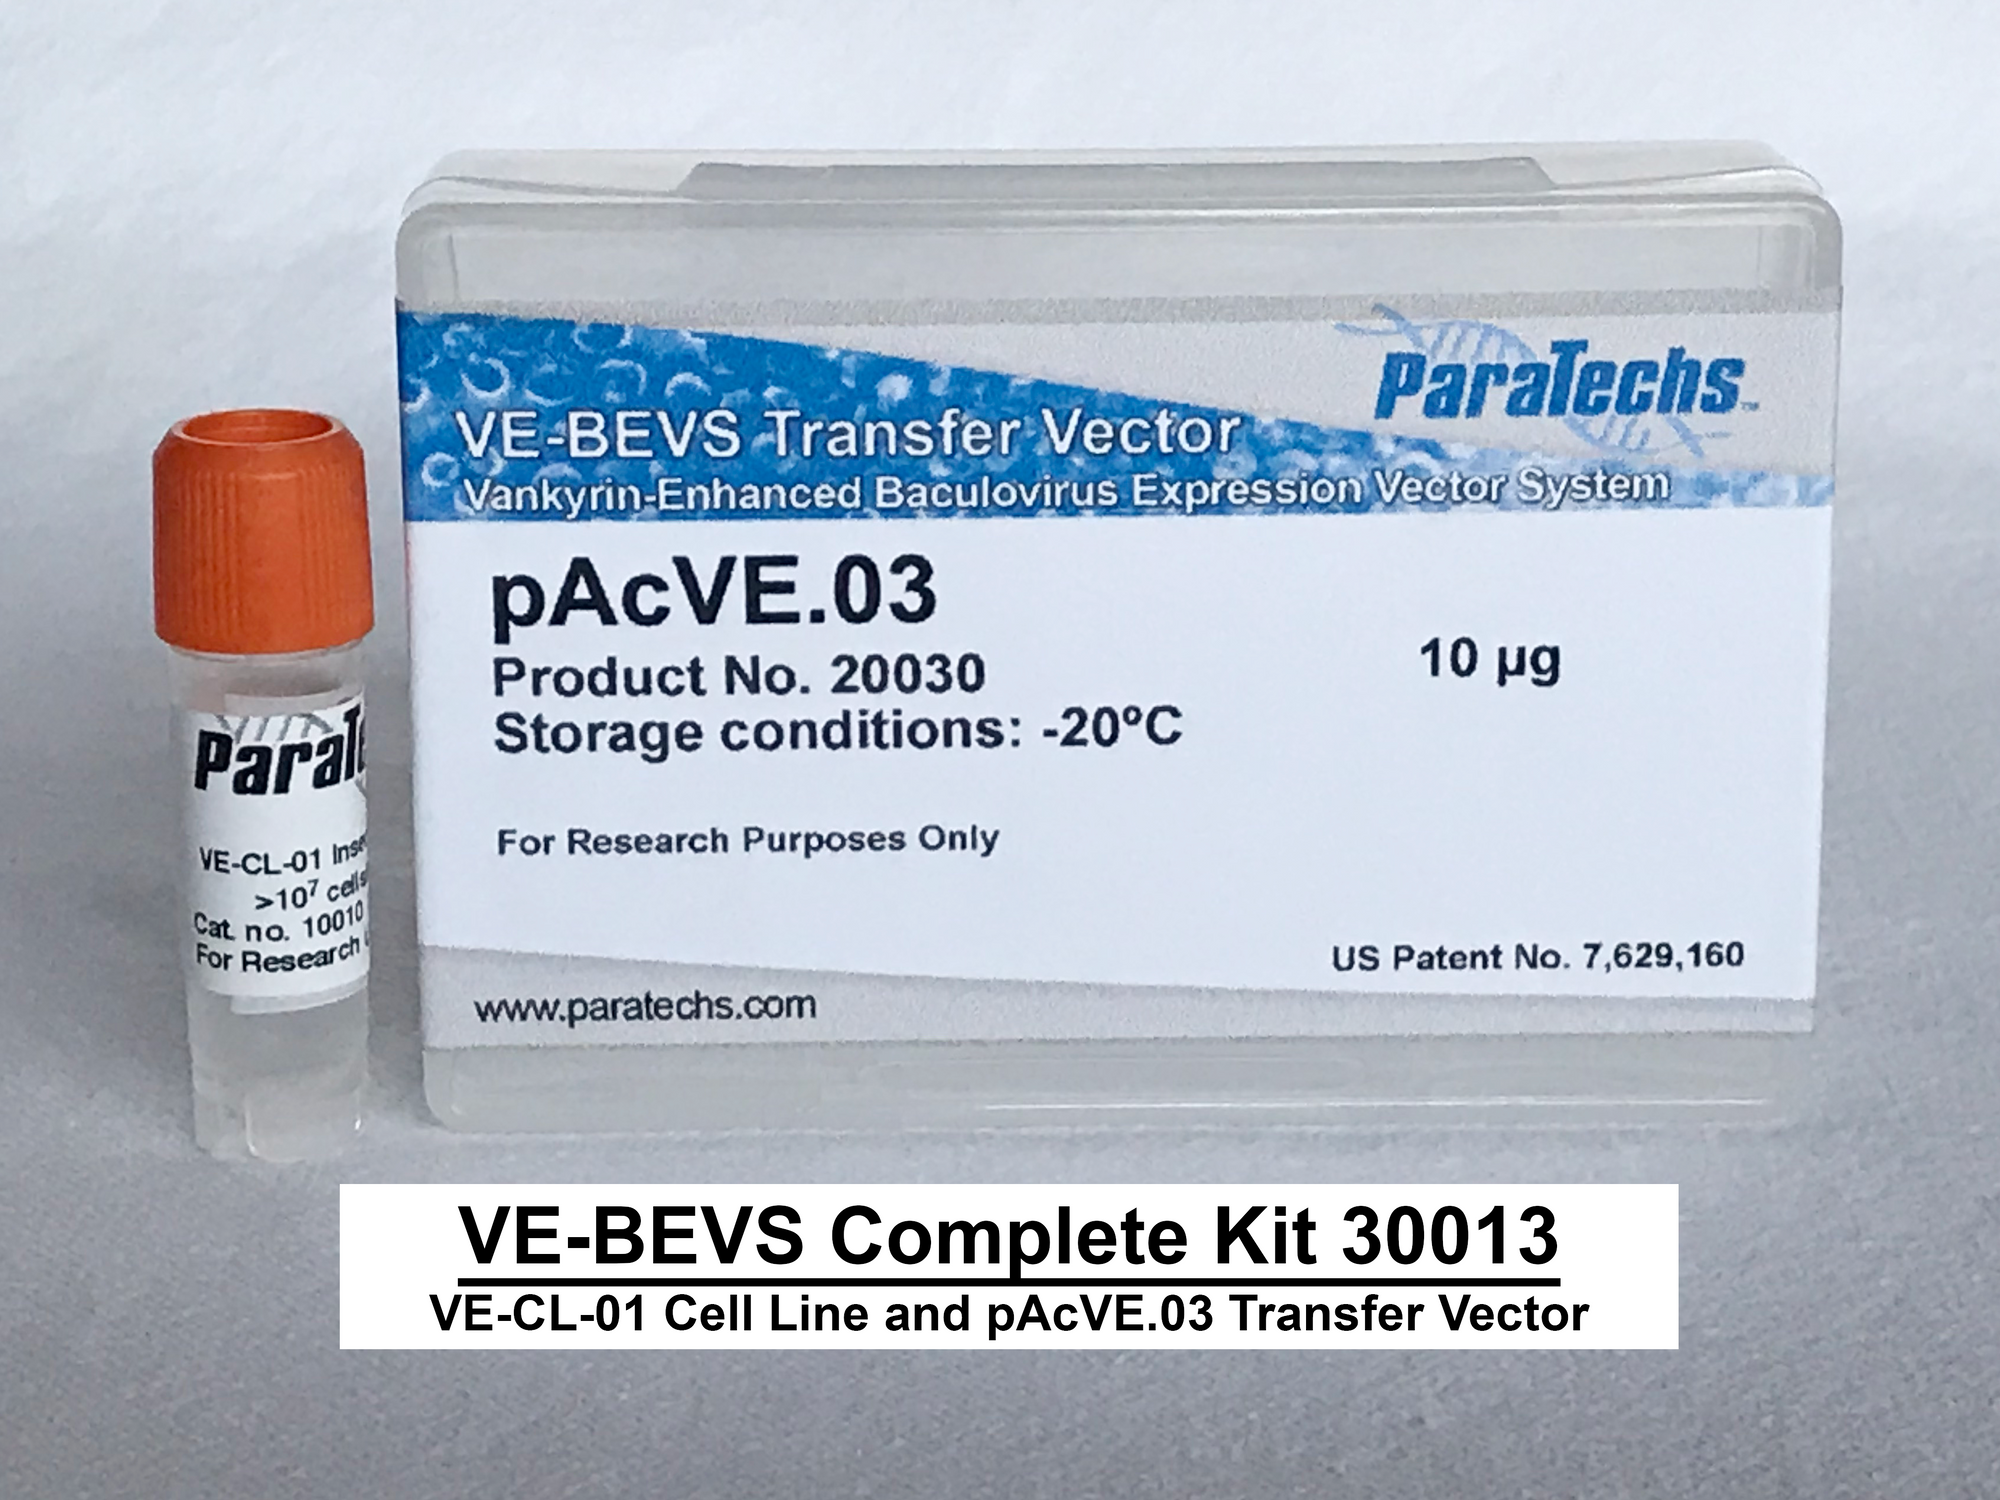 VE-BEVS Complete Kit 30013 (VE-CL-01, pAcVE.03)